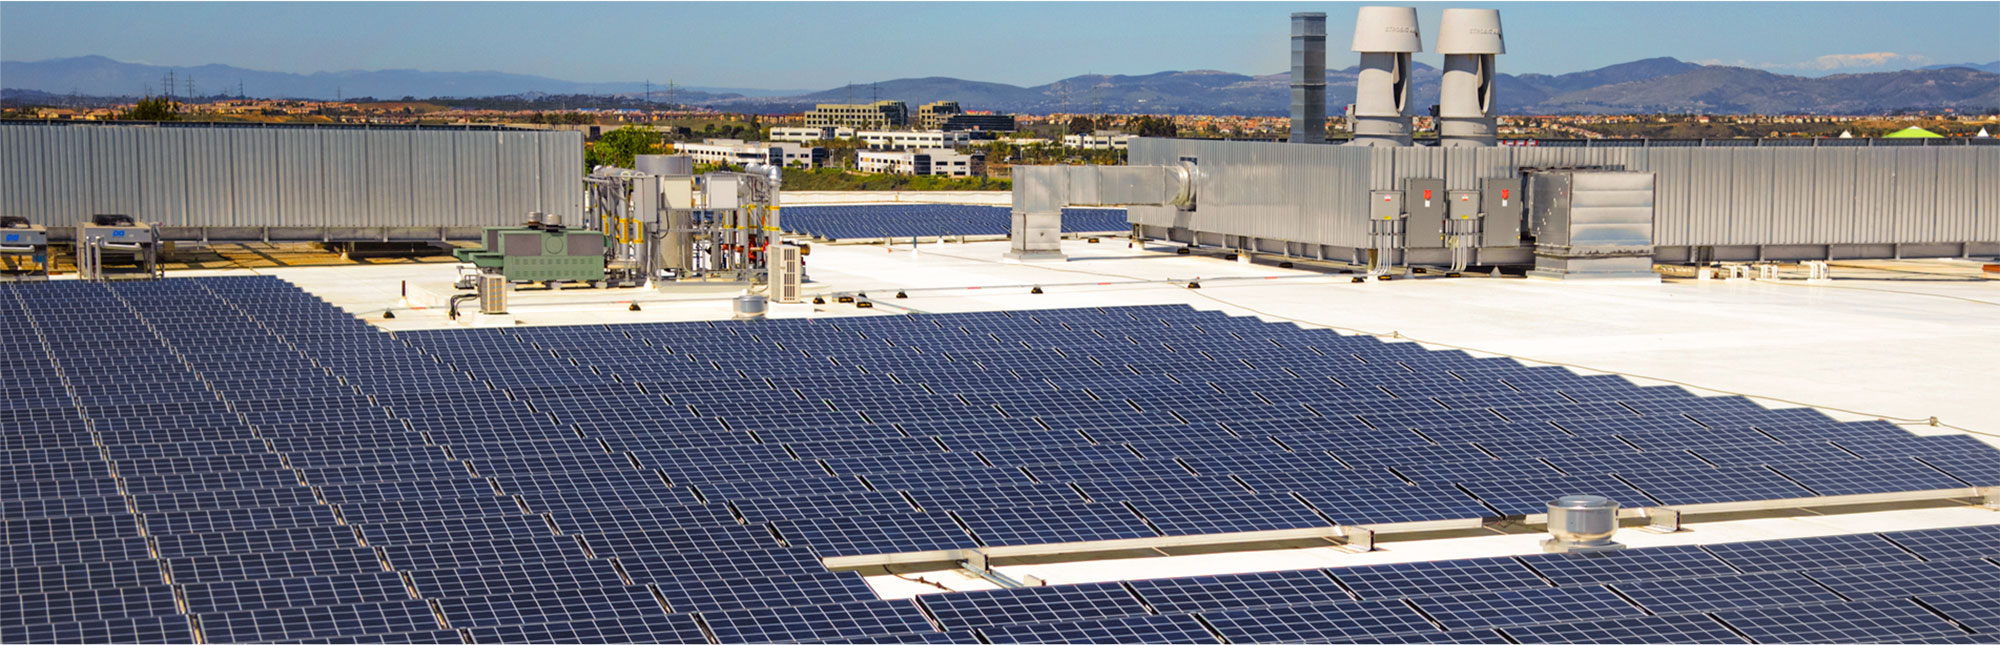 qualità certificata per le aziende dmt solar impianti fotovoltaici partner tesla, maxeon sunpower, solaredge